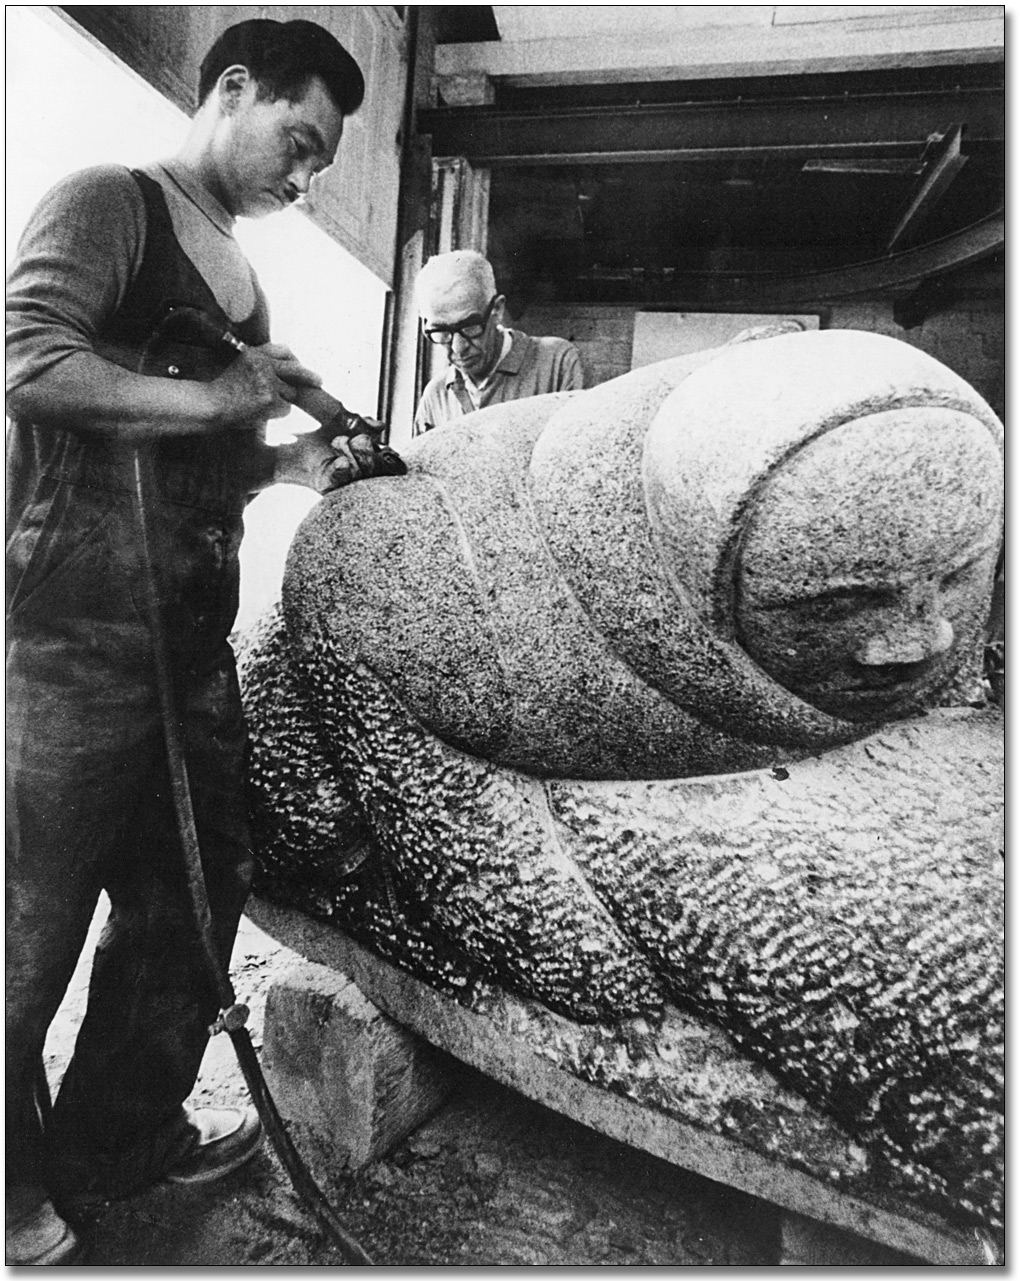 Photographie : Paulosie Kanayook travaillant sur sa sculpture, Hunter With Seal [Le chasseur et le phoque], 1968